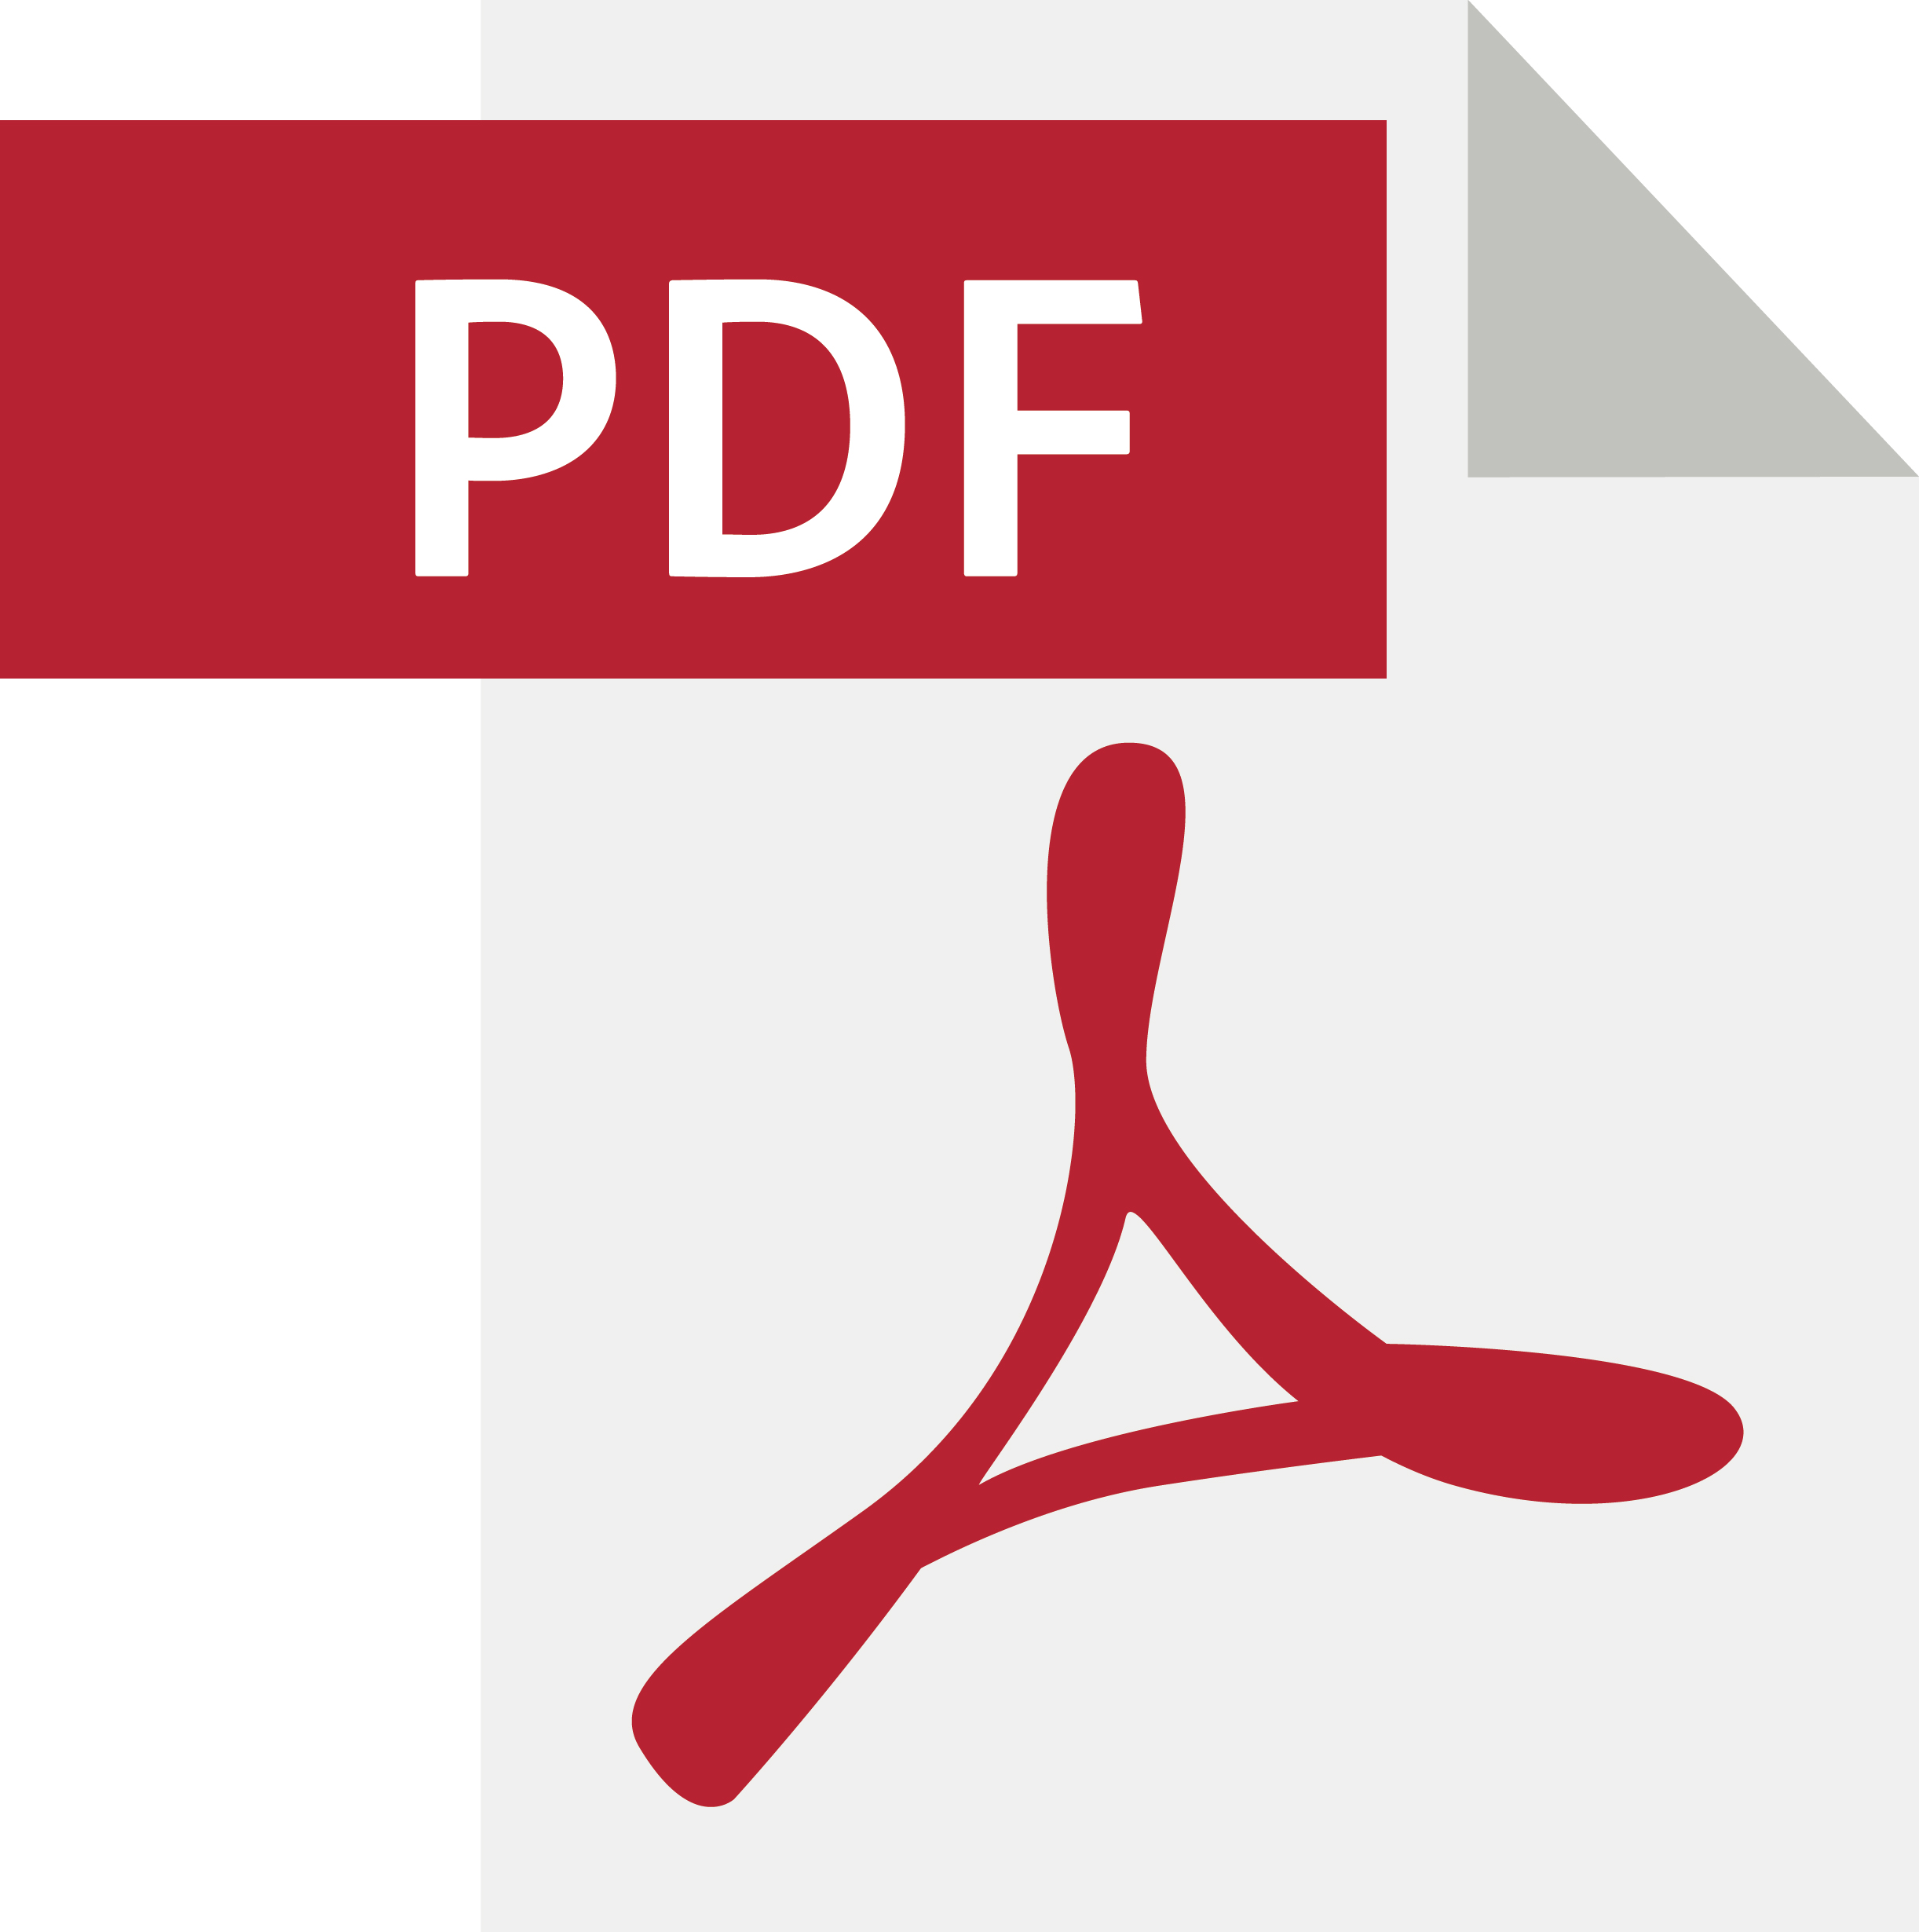 Изображений формат pdf. Pdf картинки. Логотип pdf. Значок pdf файла. Пиктограмма pdf.